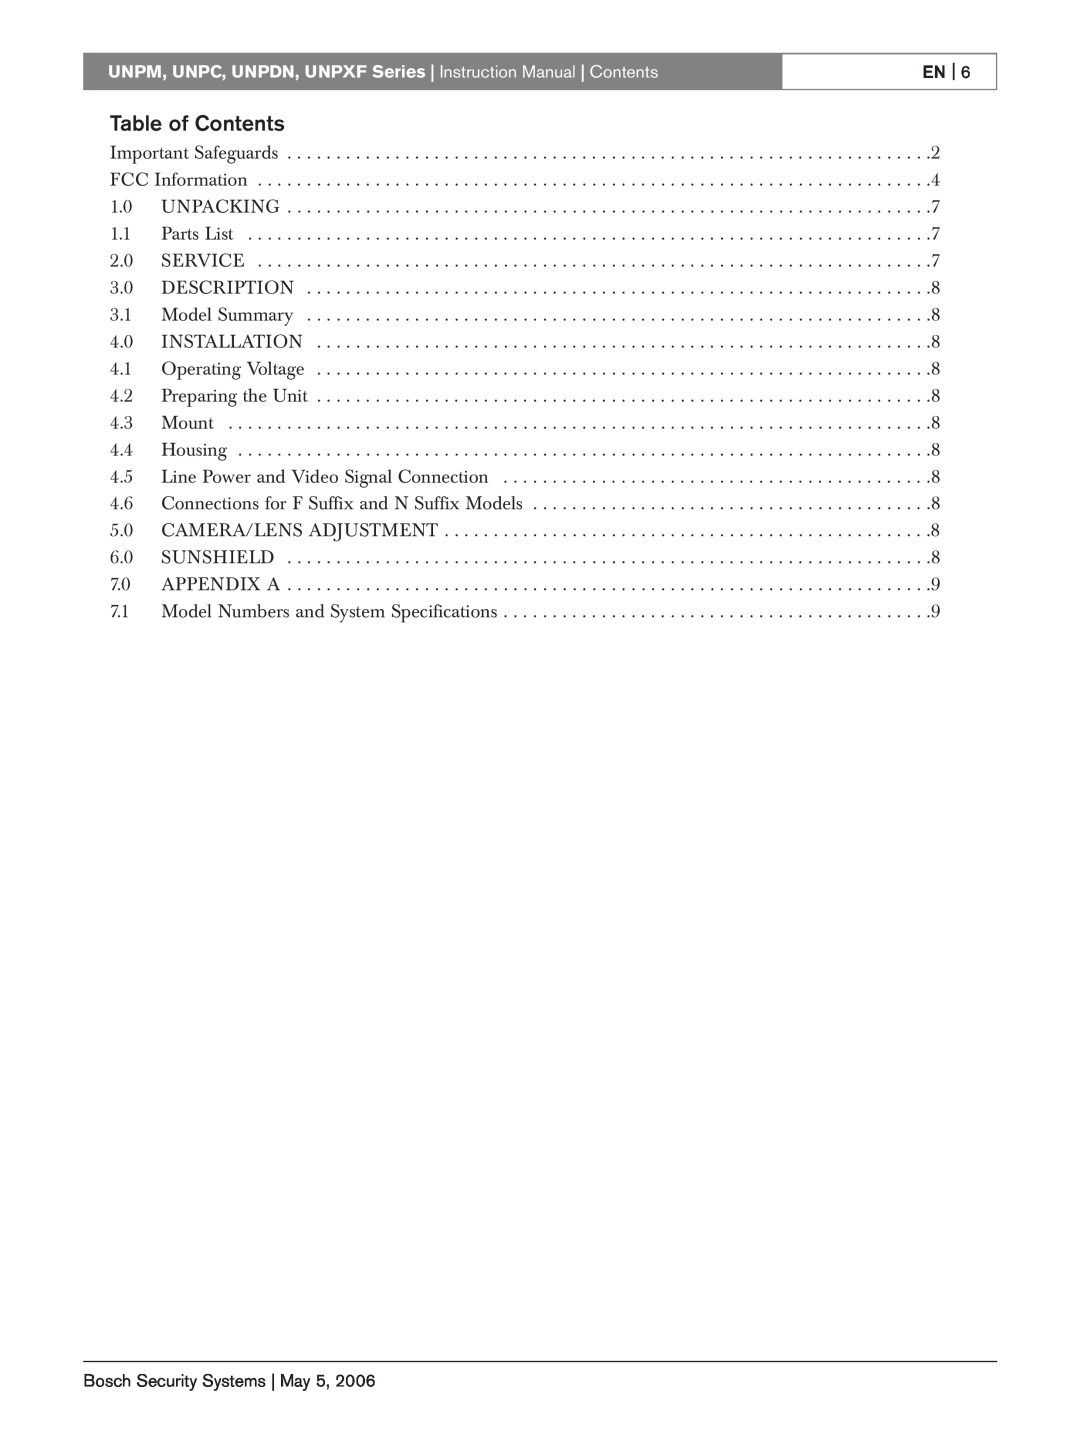 Bosch Appliances UNPC, UNPM, UNPXF, UNPDN instruction manual Table of Contents, En 